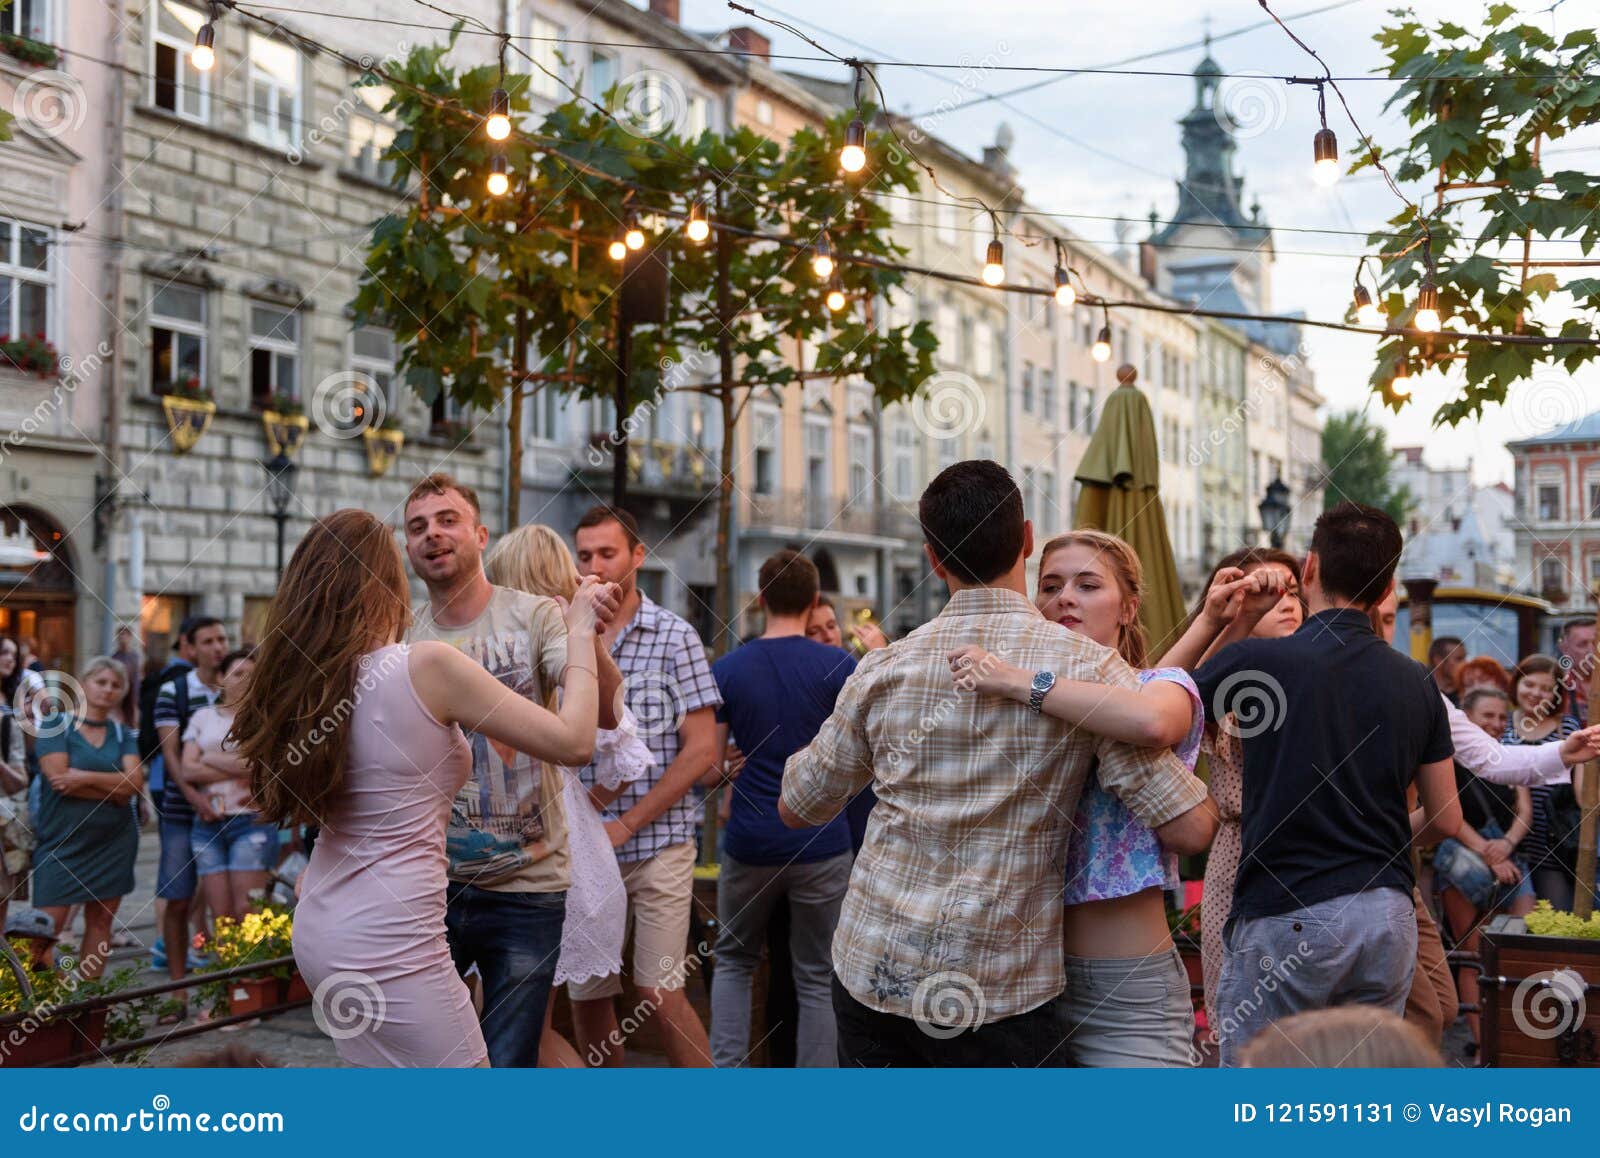 Lviv, Ukraine - June 9, 2018: Salsa Dancers In Outdoor ...